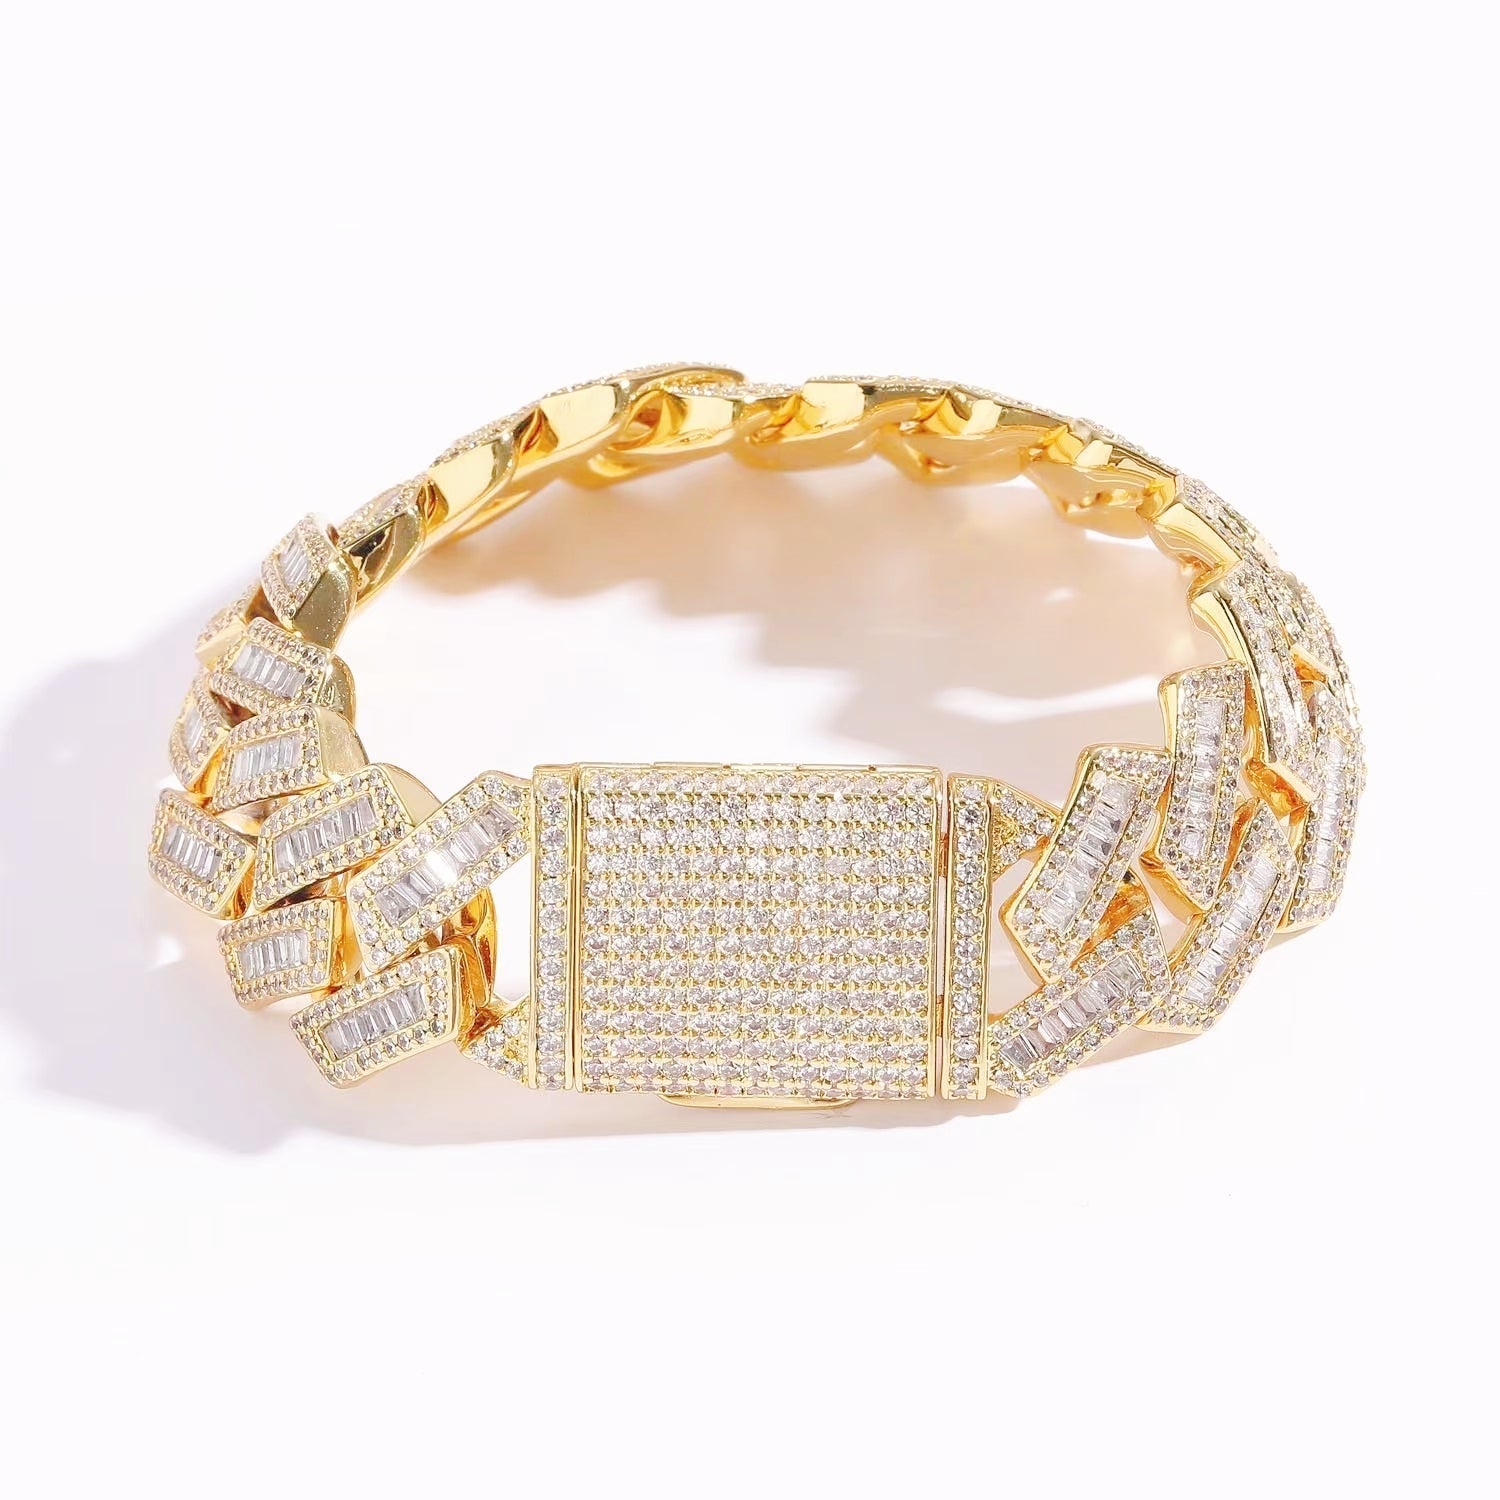 20mm Baguette Cut Moissanite Diamond Prong Cuban Link Bracelet in 14K Gold Jewelry 